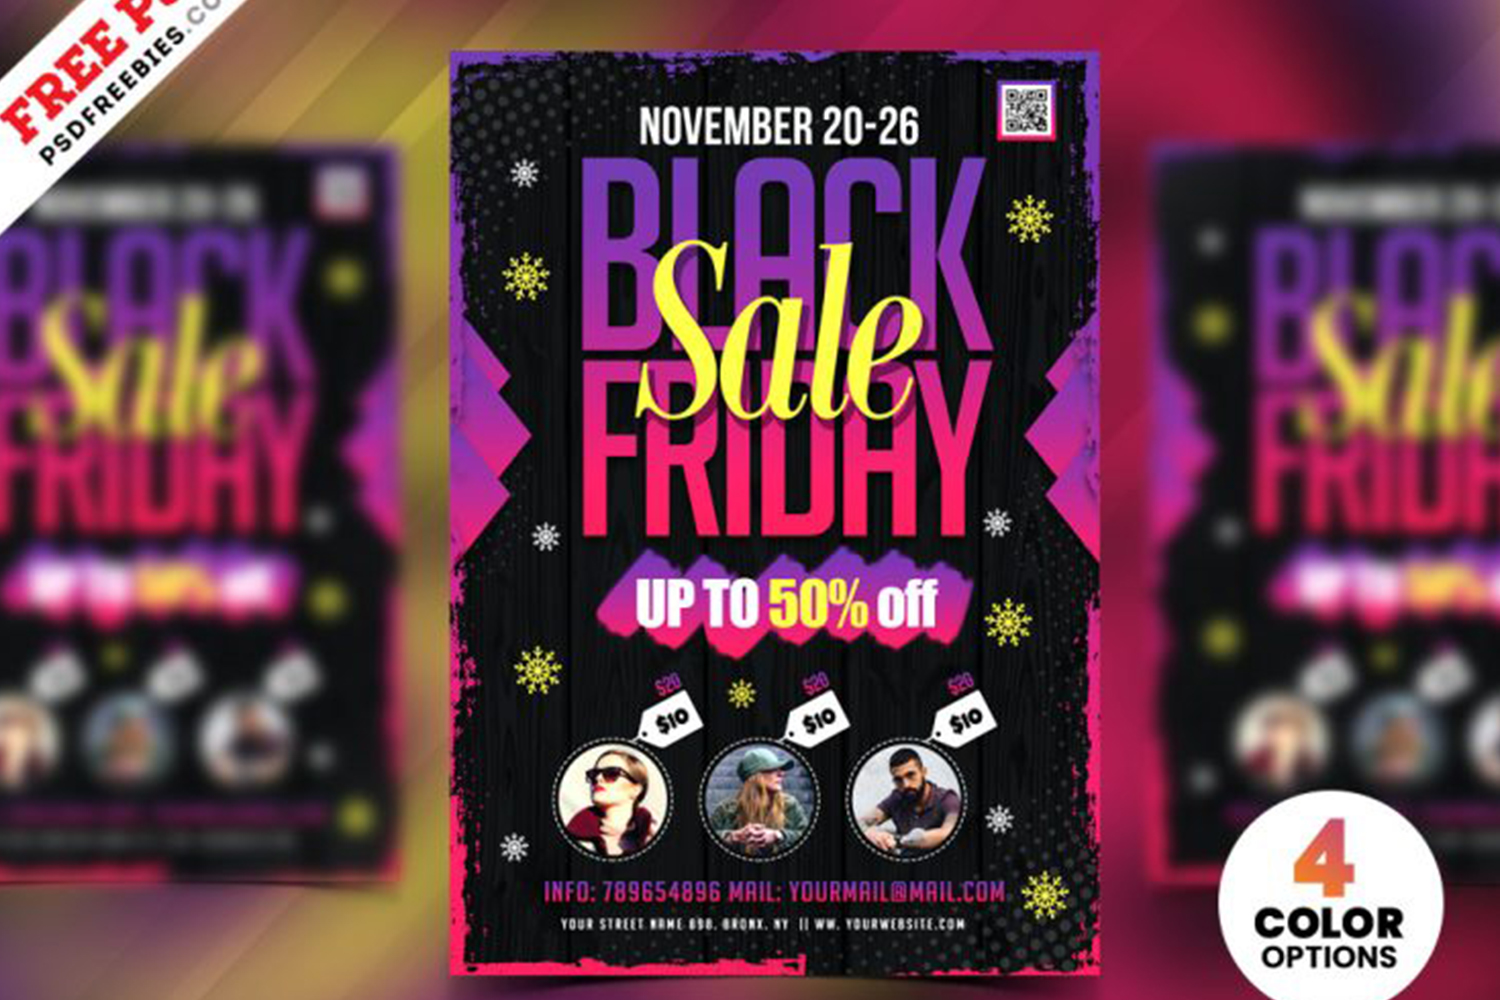 Black Friday Sale Flyer Design PSD Free Download